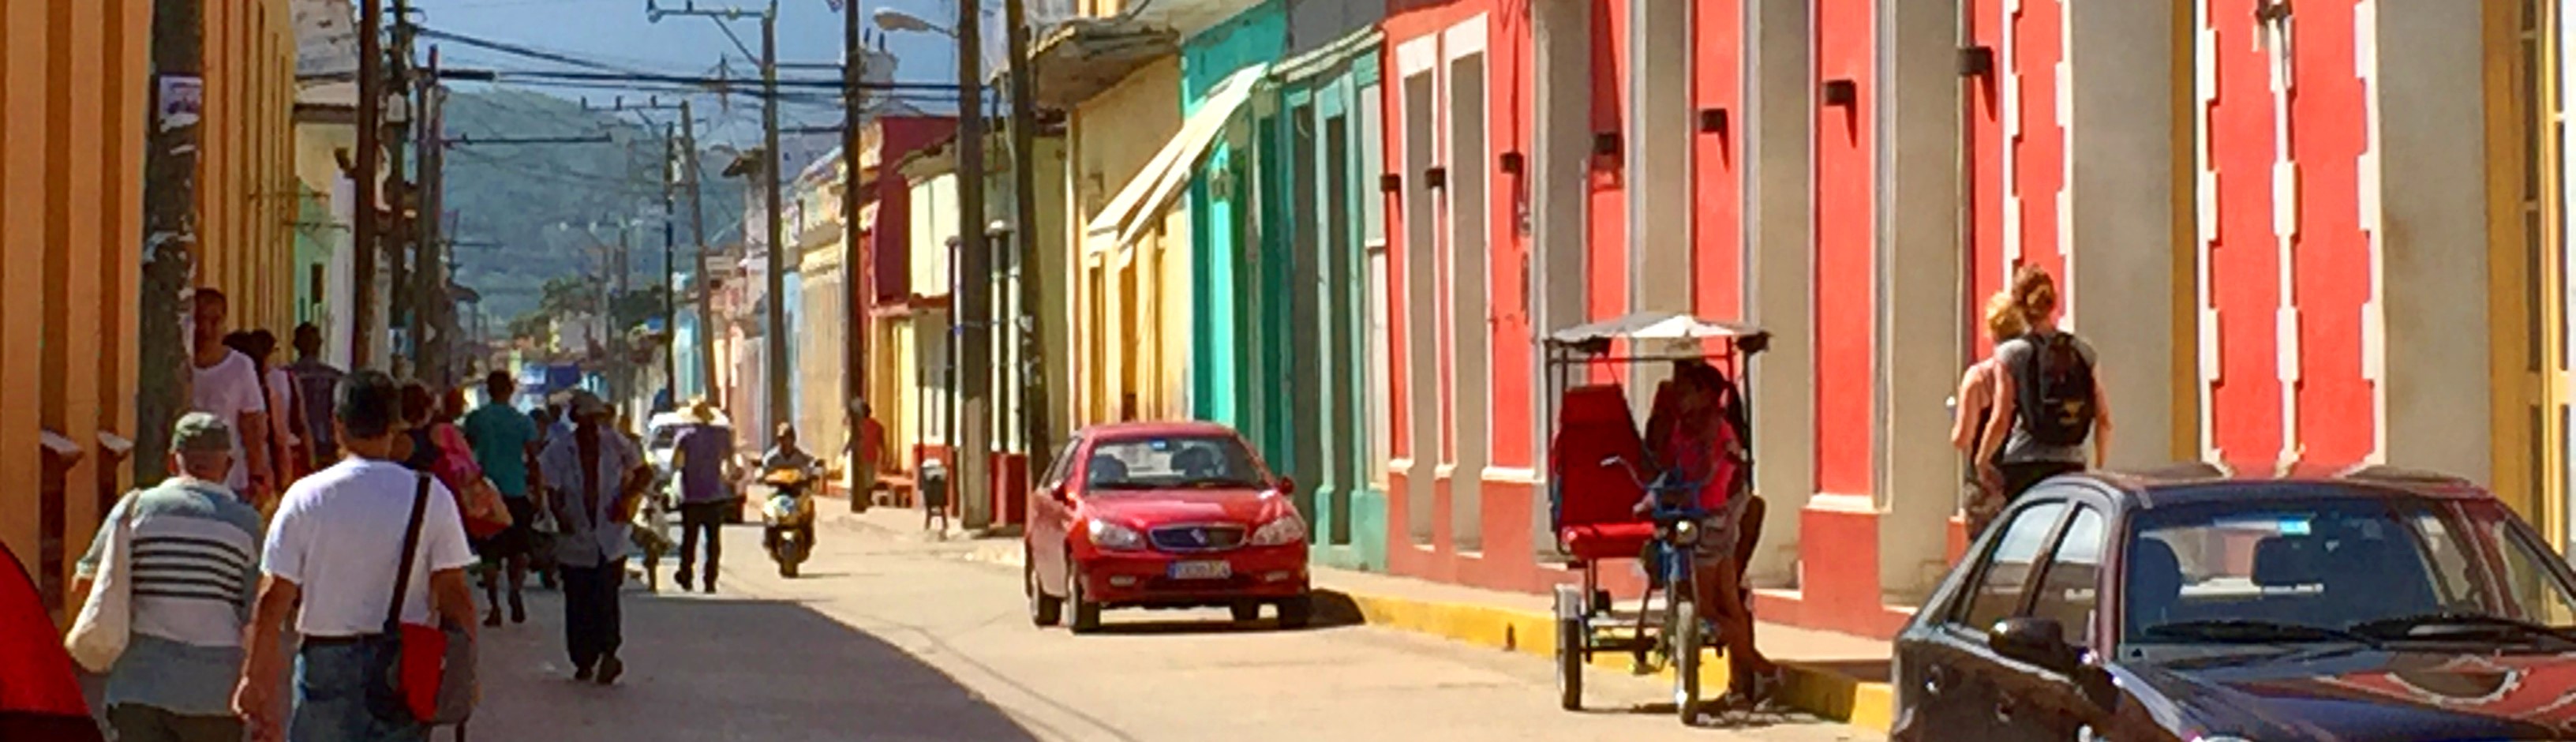 På denne reise til Cuba opplever du hyggelige Trinidad